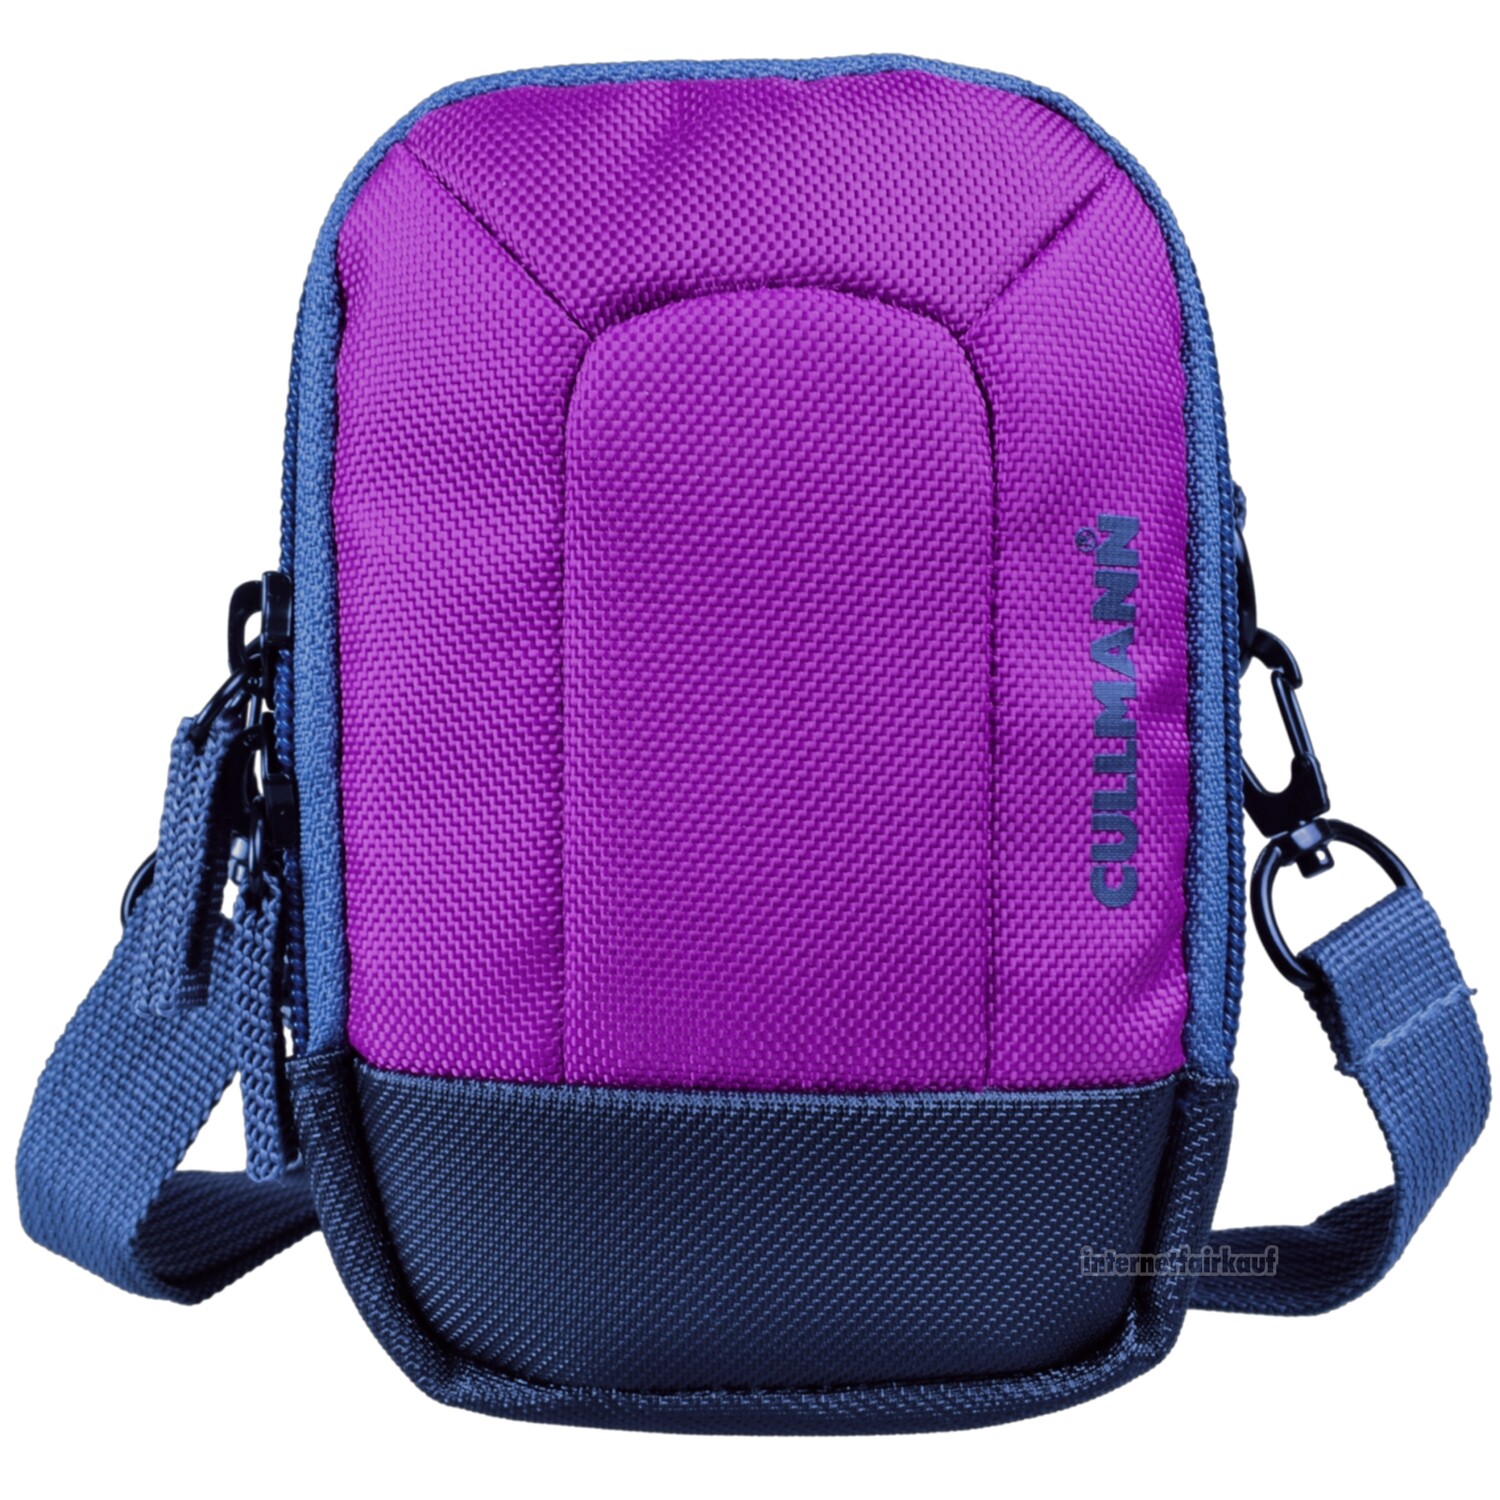 Kameratasche purple passend für Canon PowerShot G10